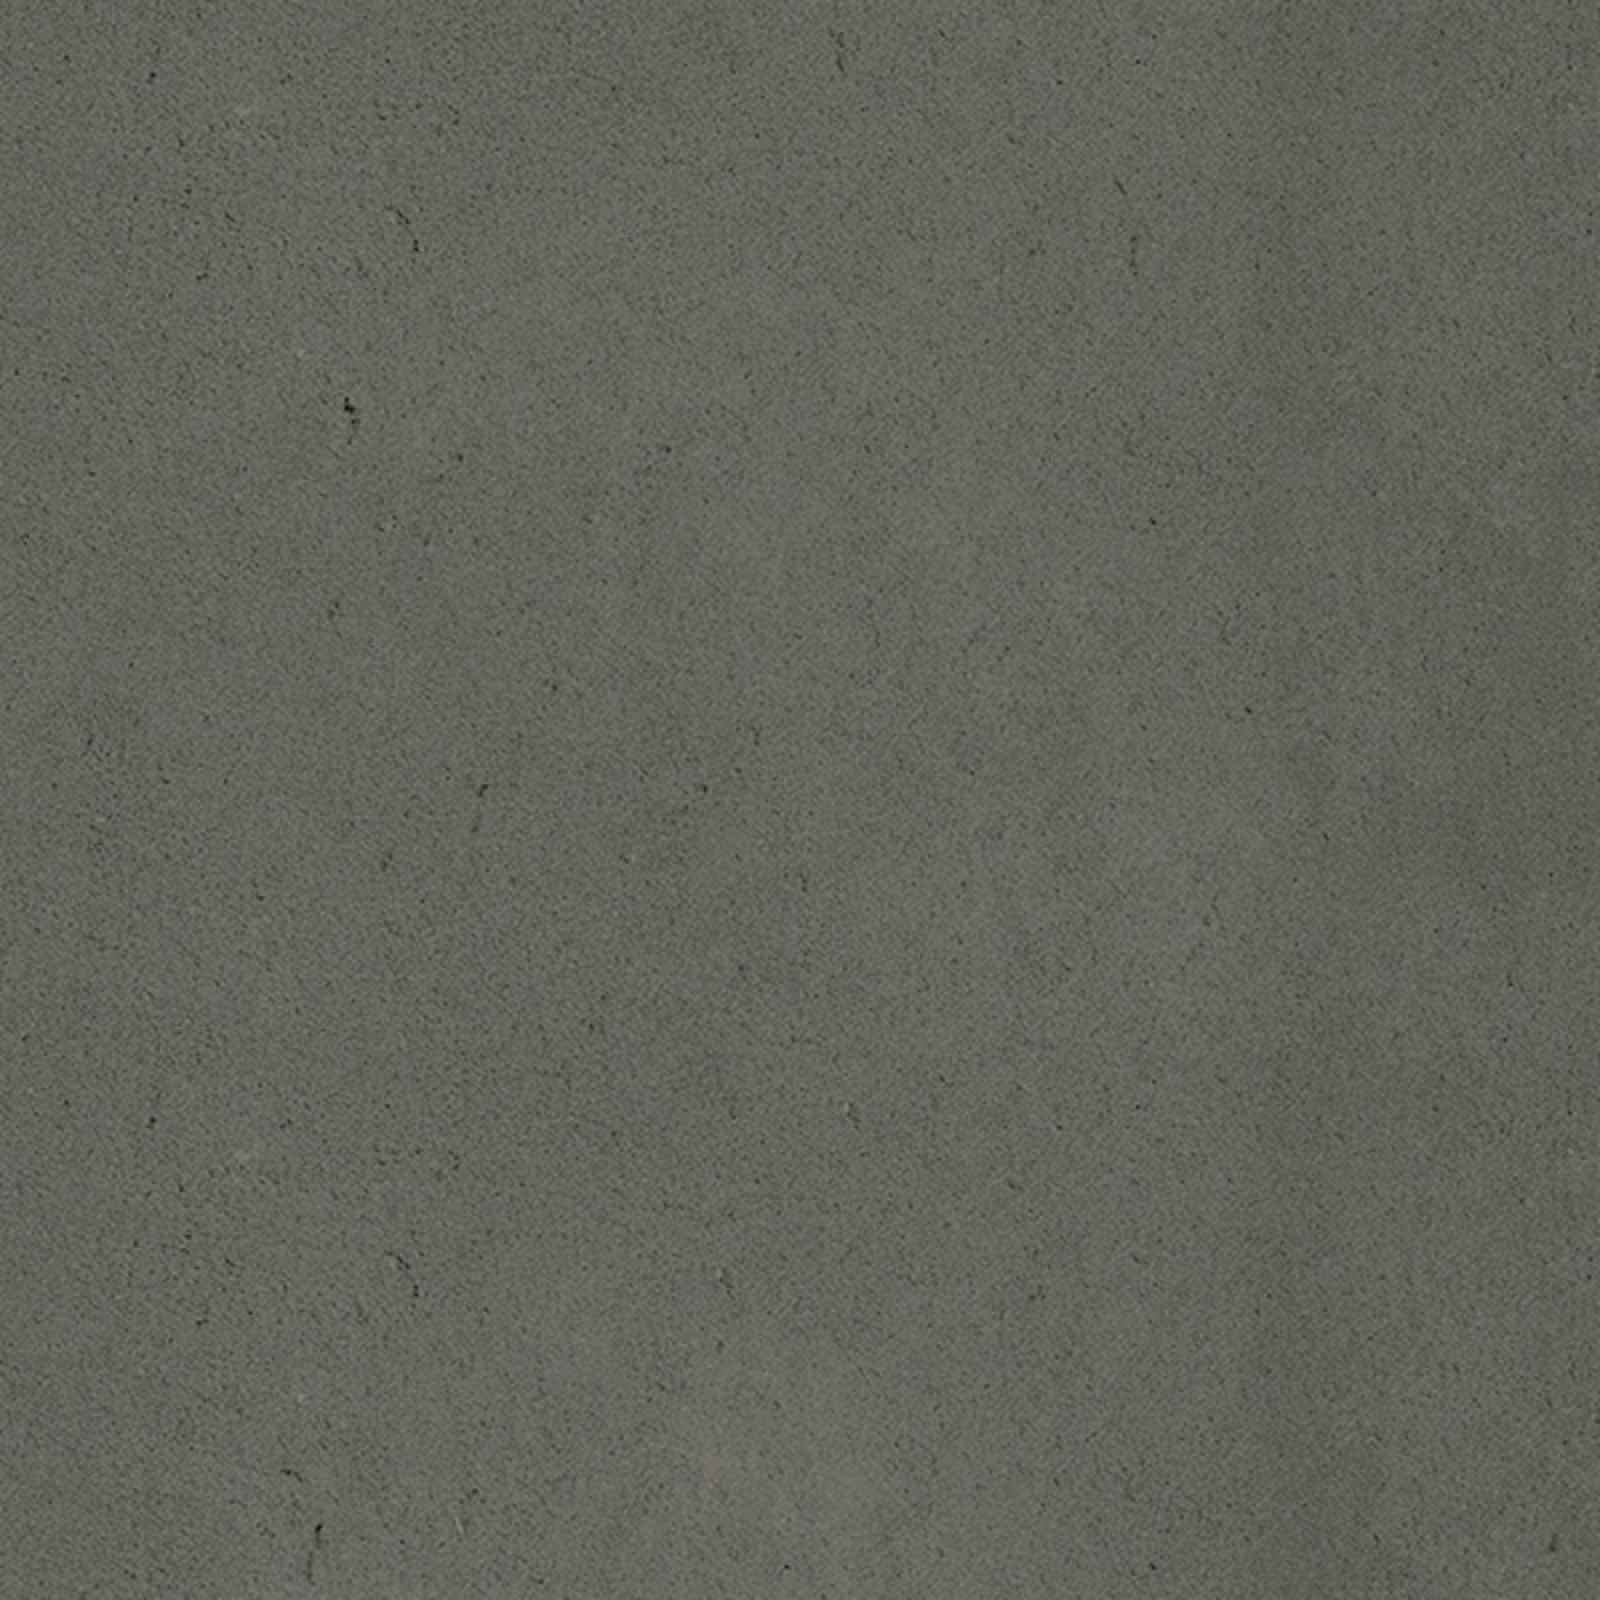 Dlažba Graniti Fiandre Core Shade ashy core 60x60 cm pololesk A177R960